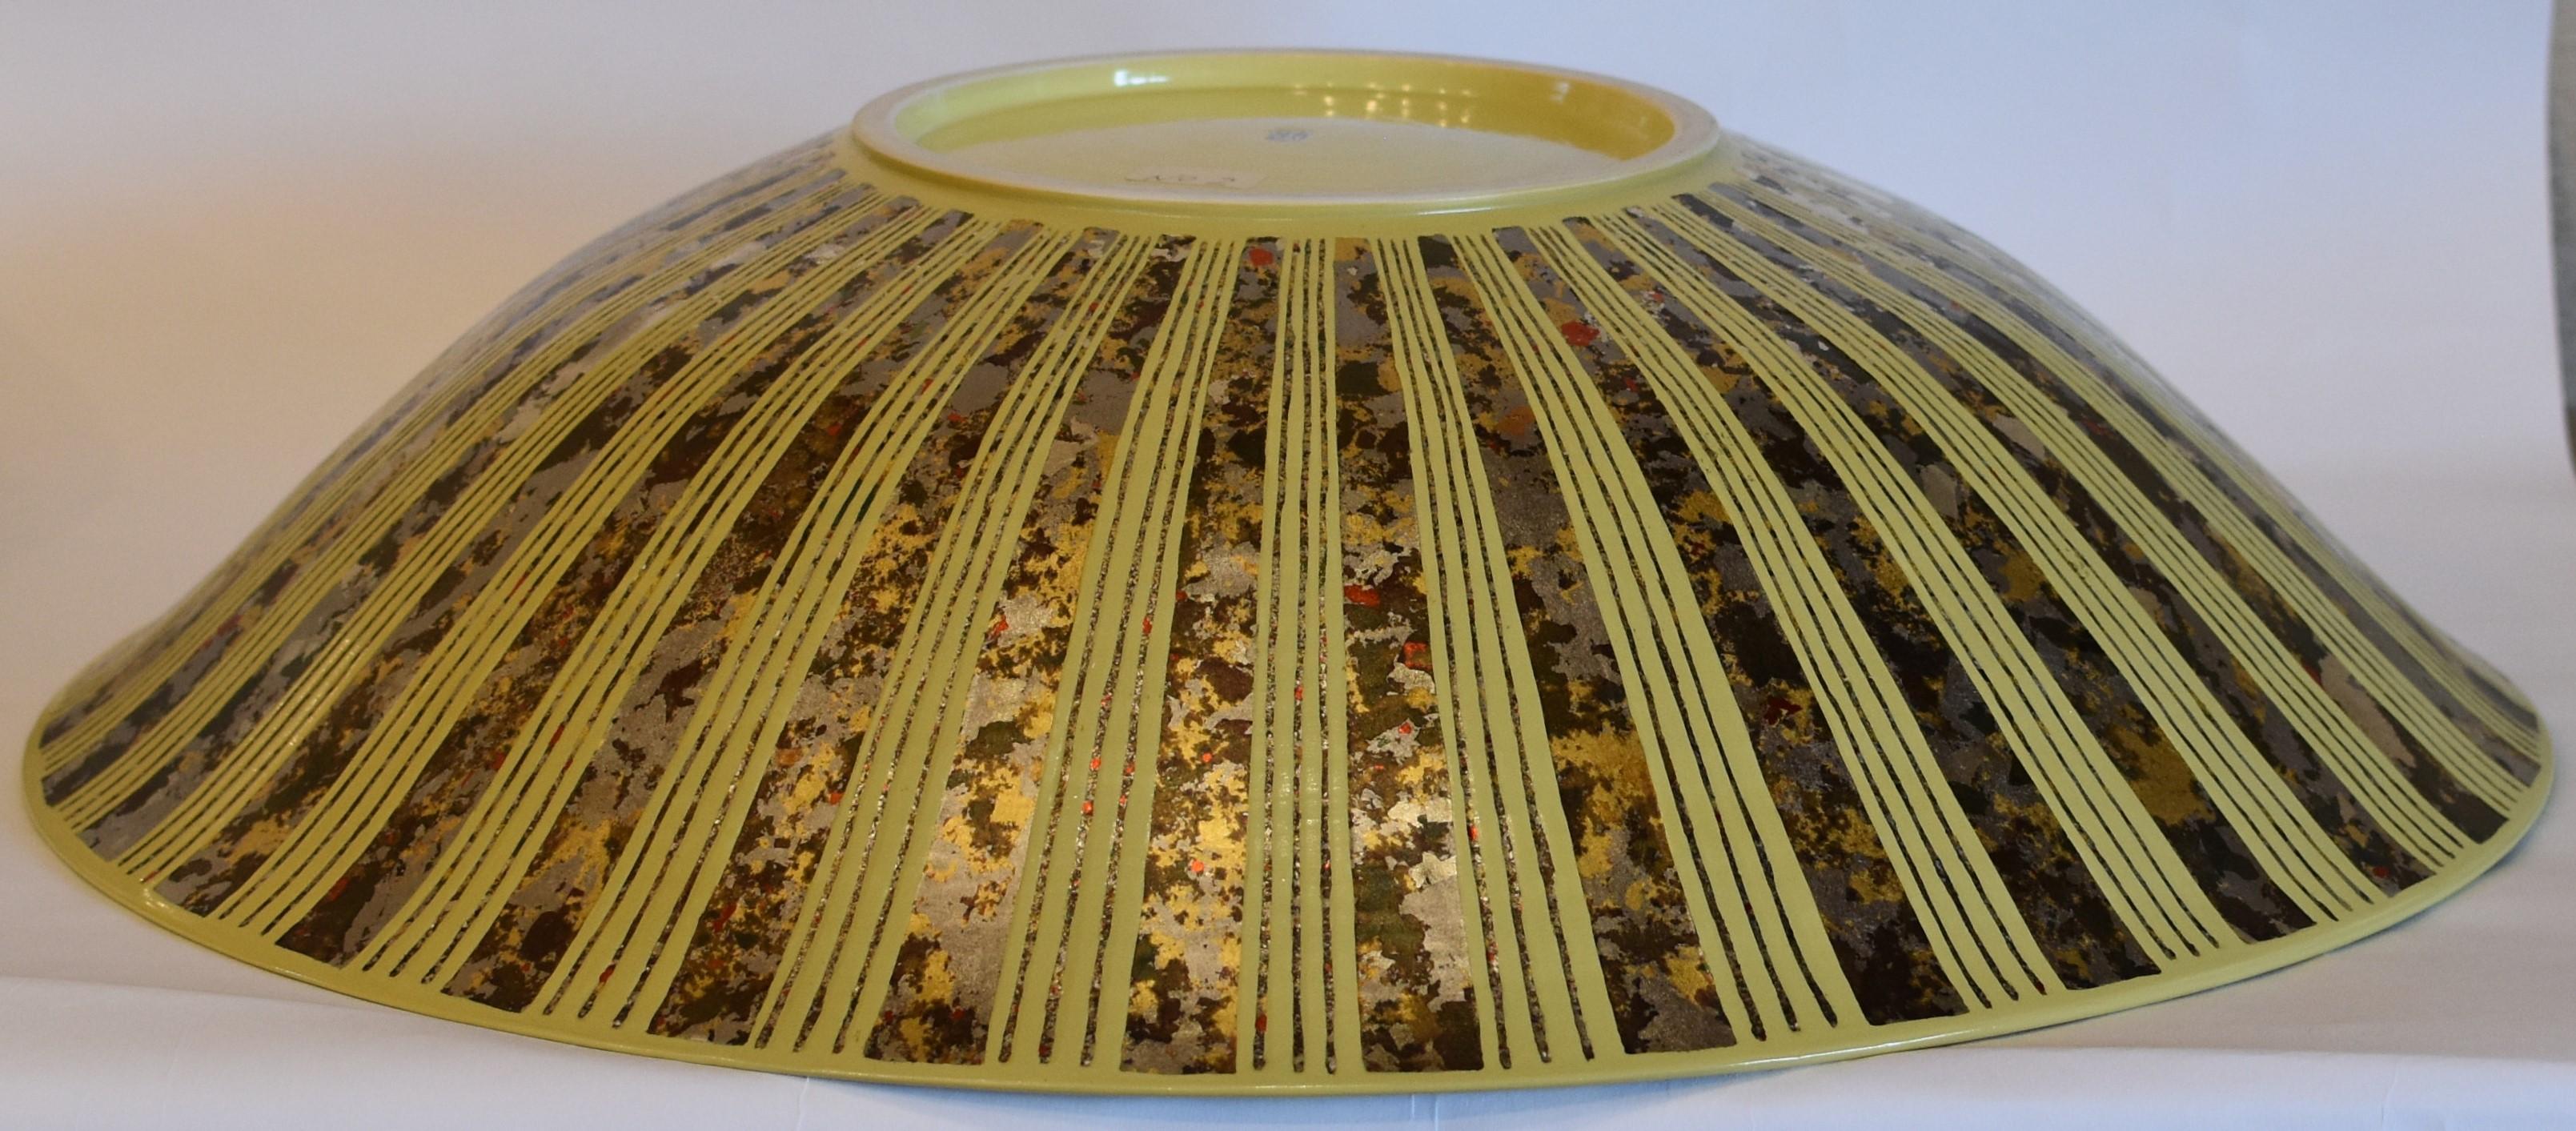 Exquisites, zeitgenössisches, großes, preisgekröntes japanisches Porzellan in Museumsqualität in lebhaftem Gelb, verziert mit Ätzungen in einem komplizierten Muster mit Silberfolie in Platin, Gold und einer schönen Kombination aus mehreren Farben,